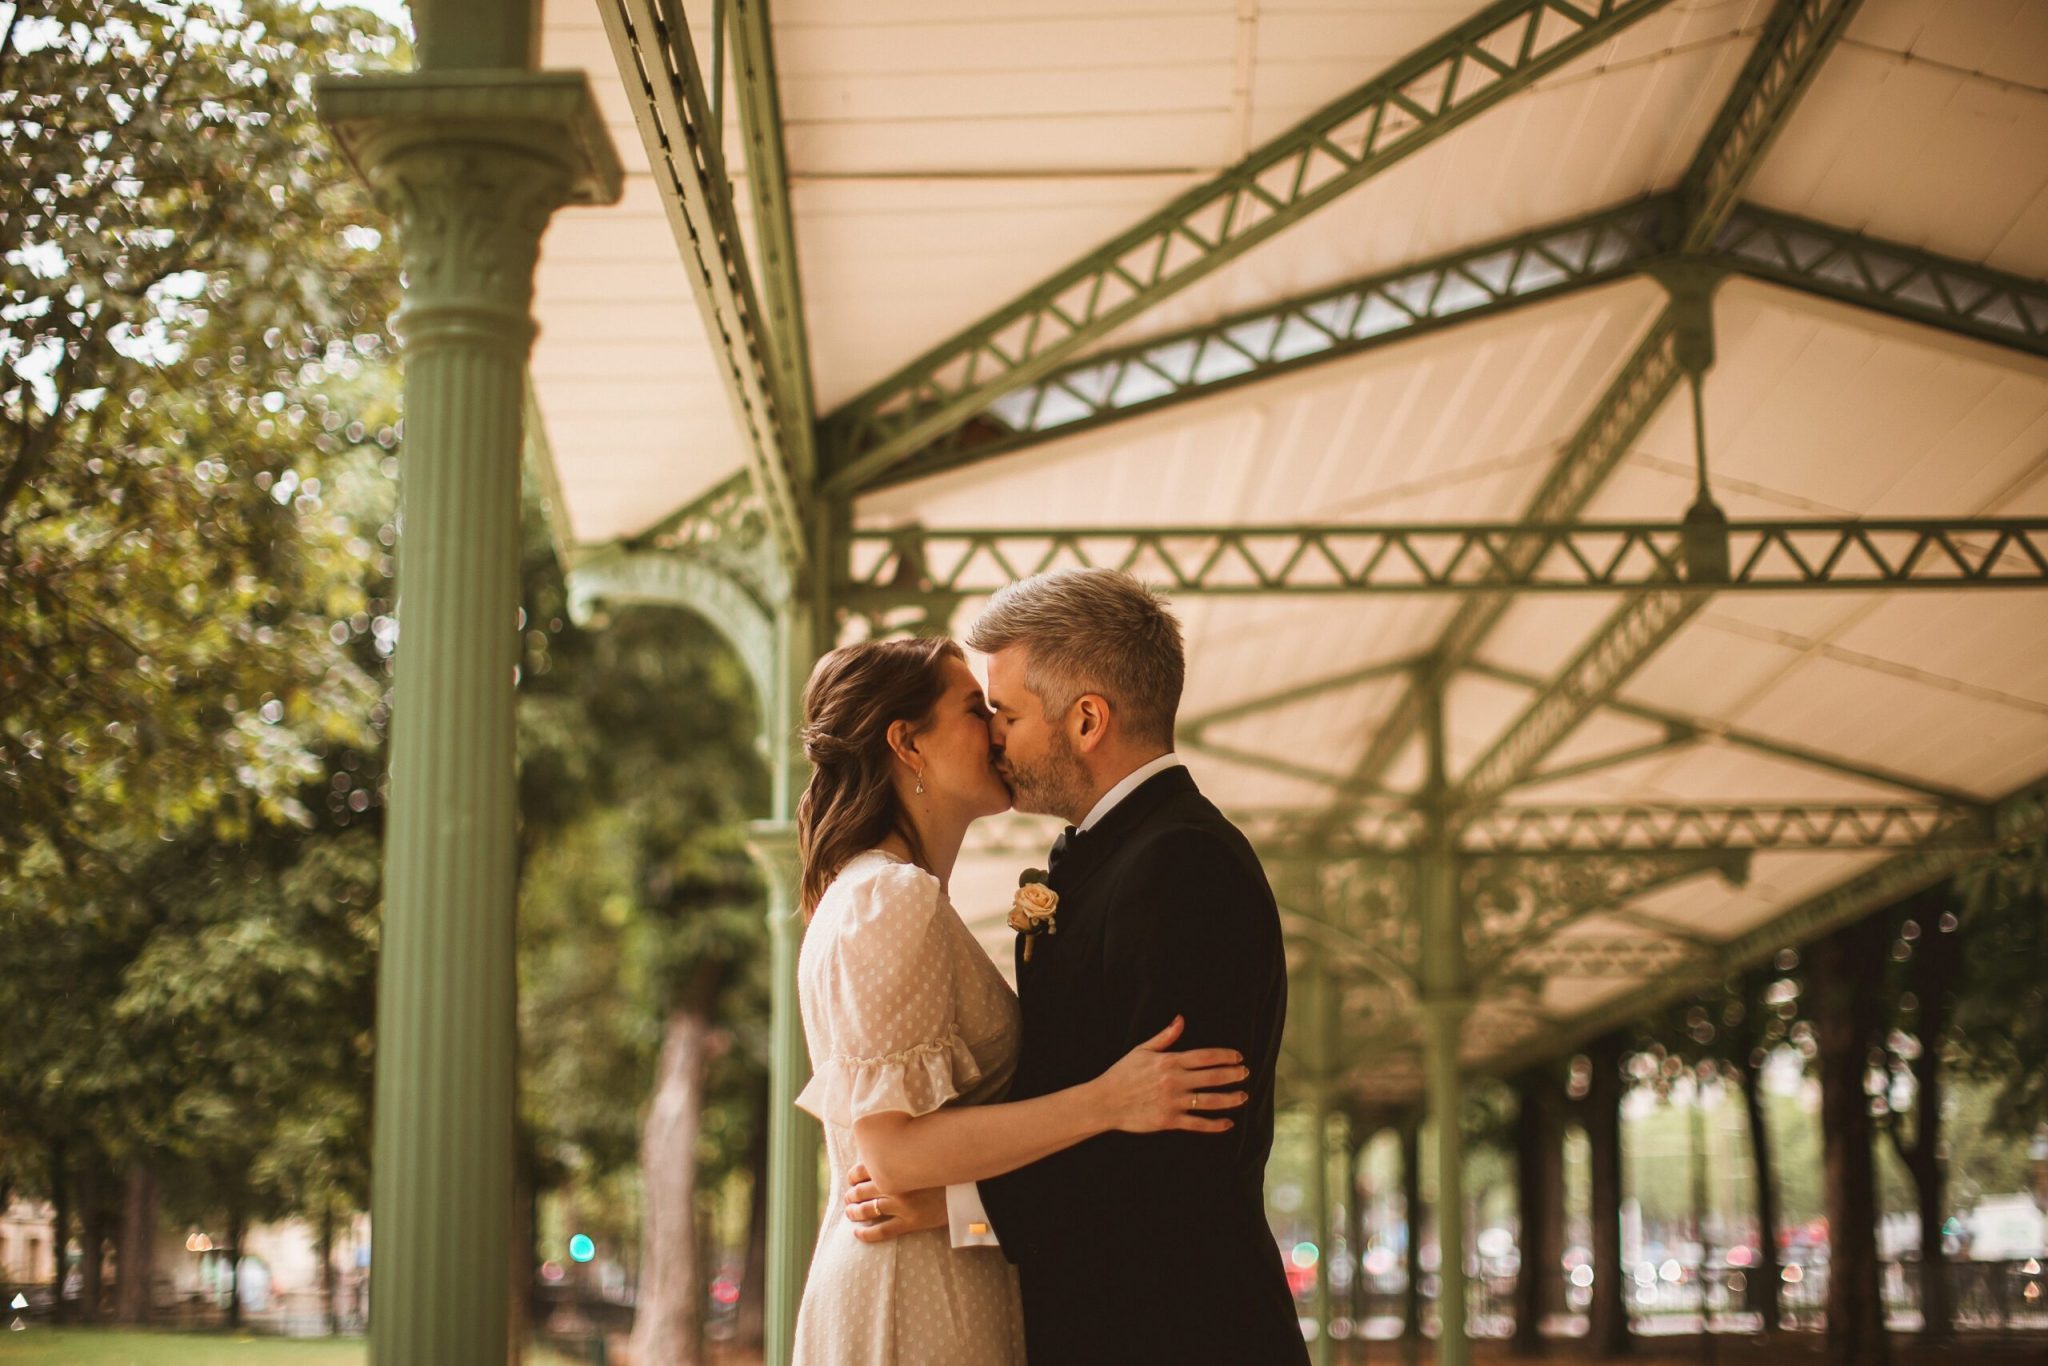 Wedding Photographer Paris – A Paris Elopement